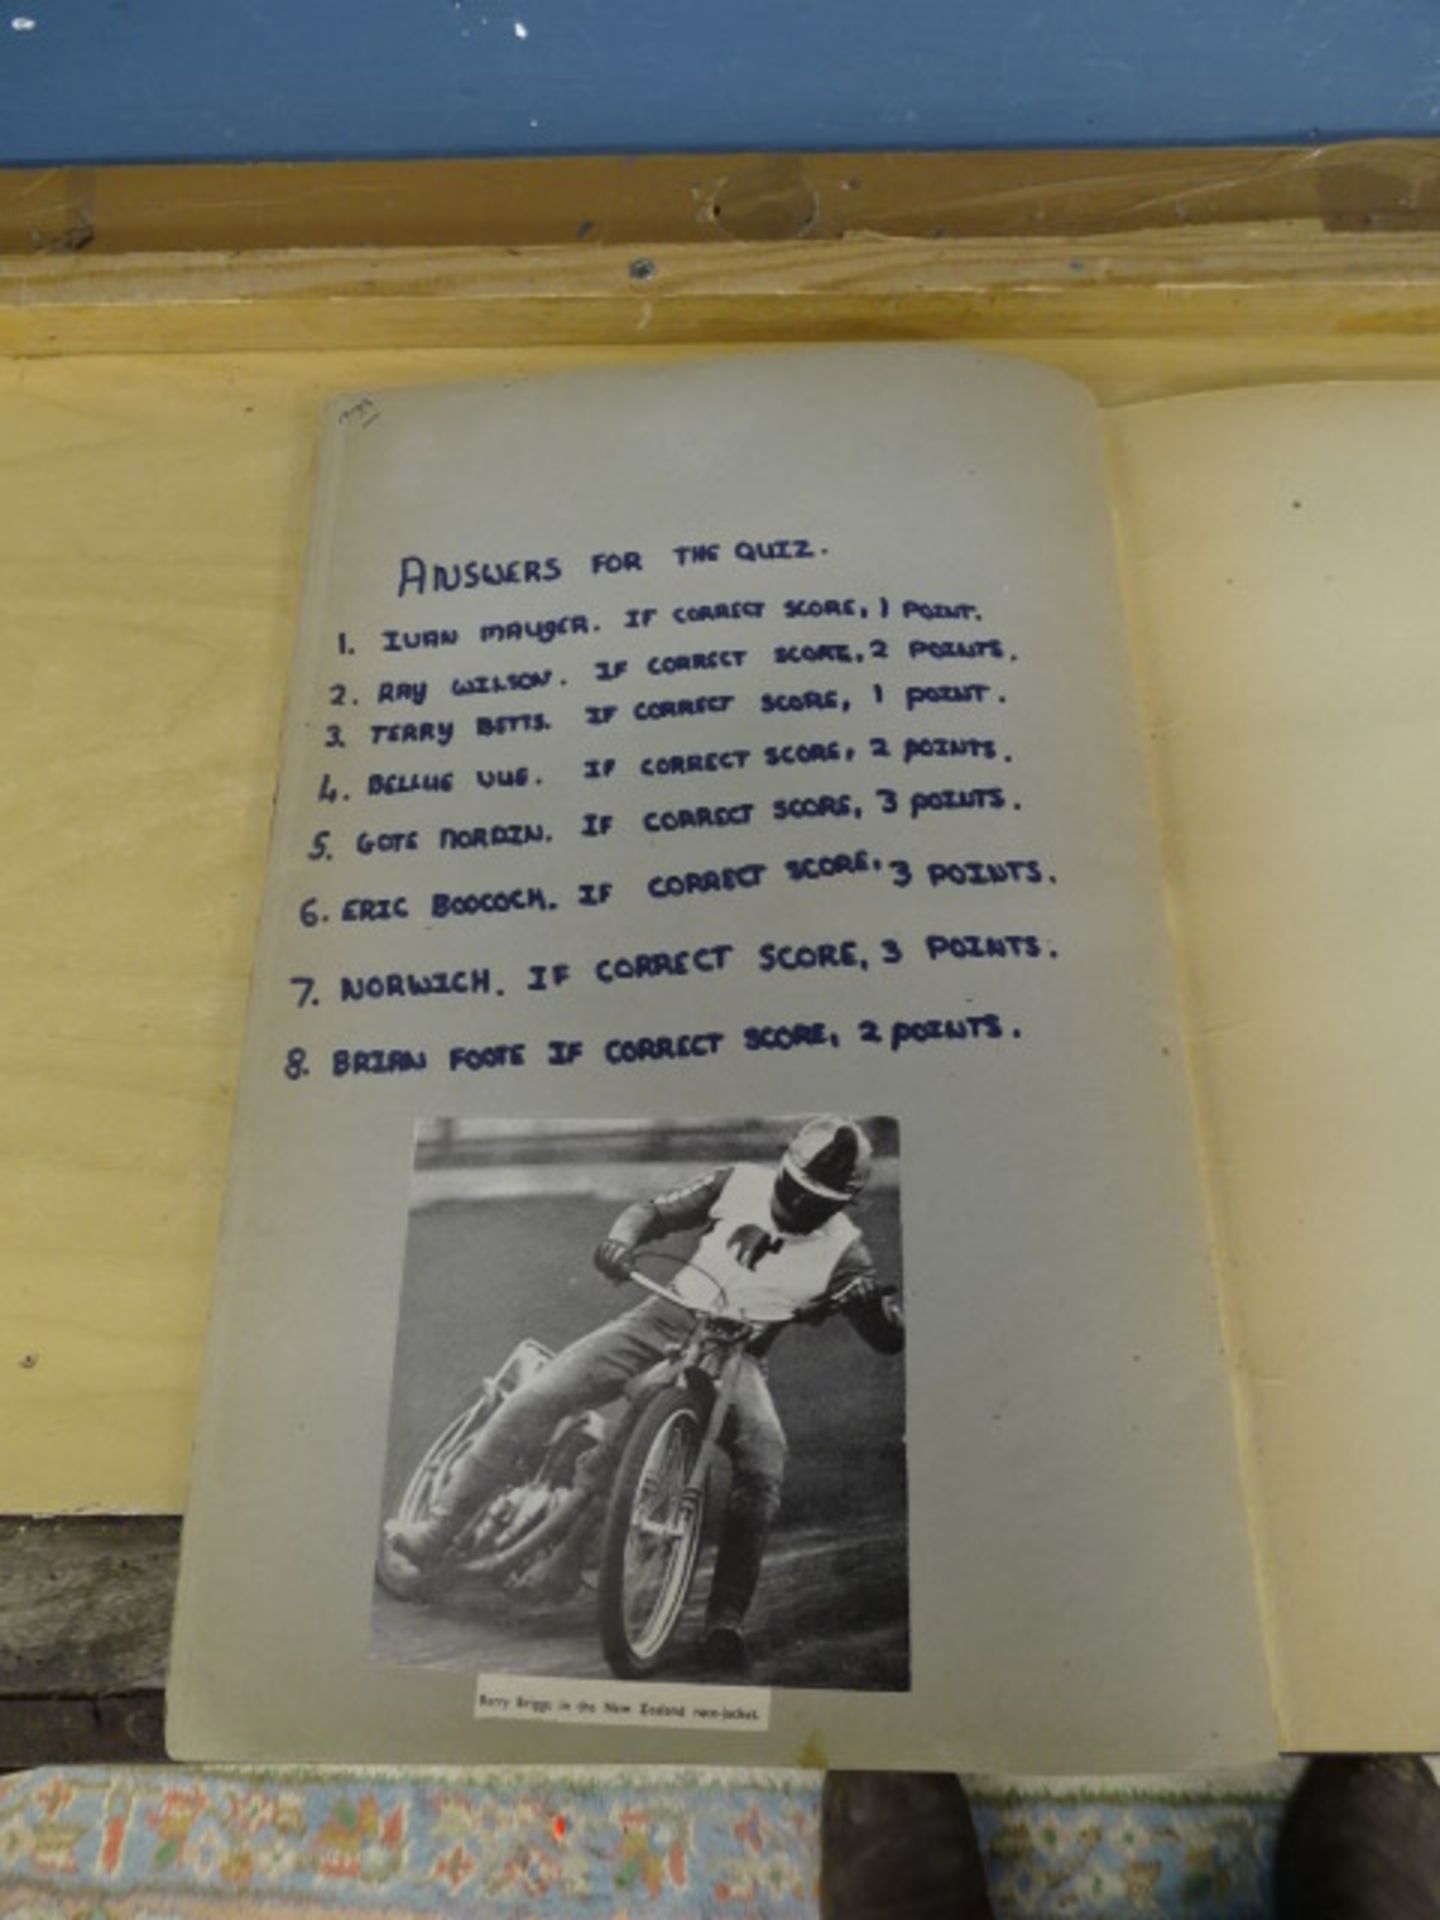 1971 Speedway scrapbook - Image 20 of 21